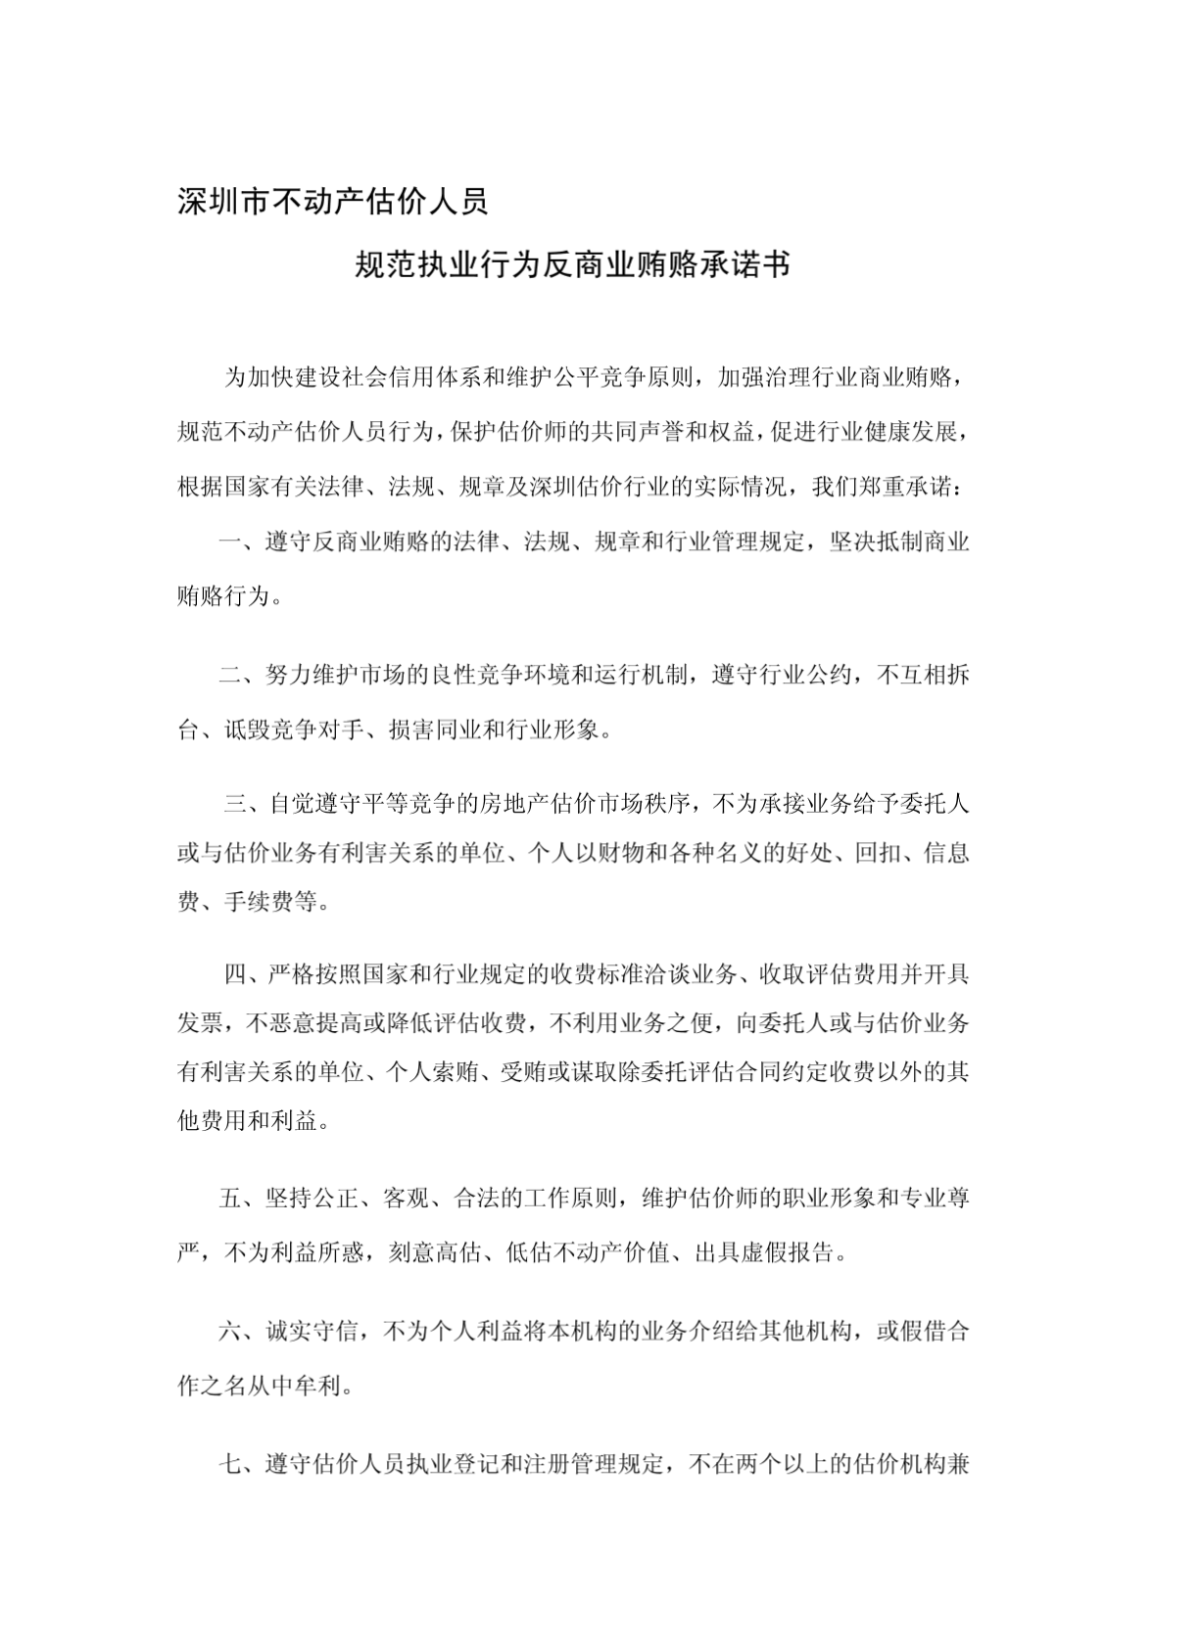 深圳市不动产估价人员规范执业行为反商业贿赂承诺书-图一